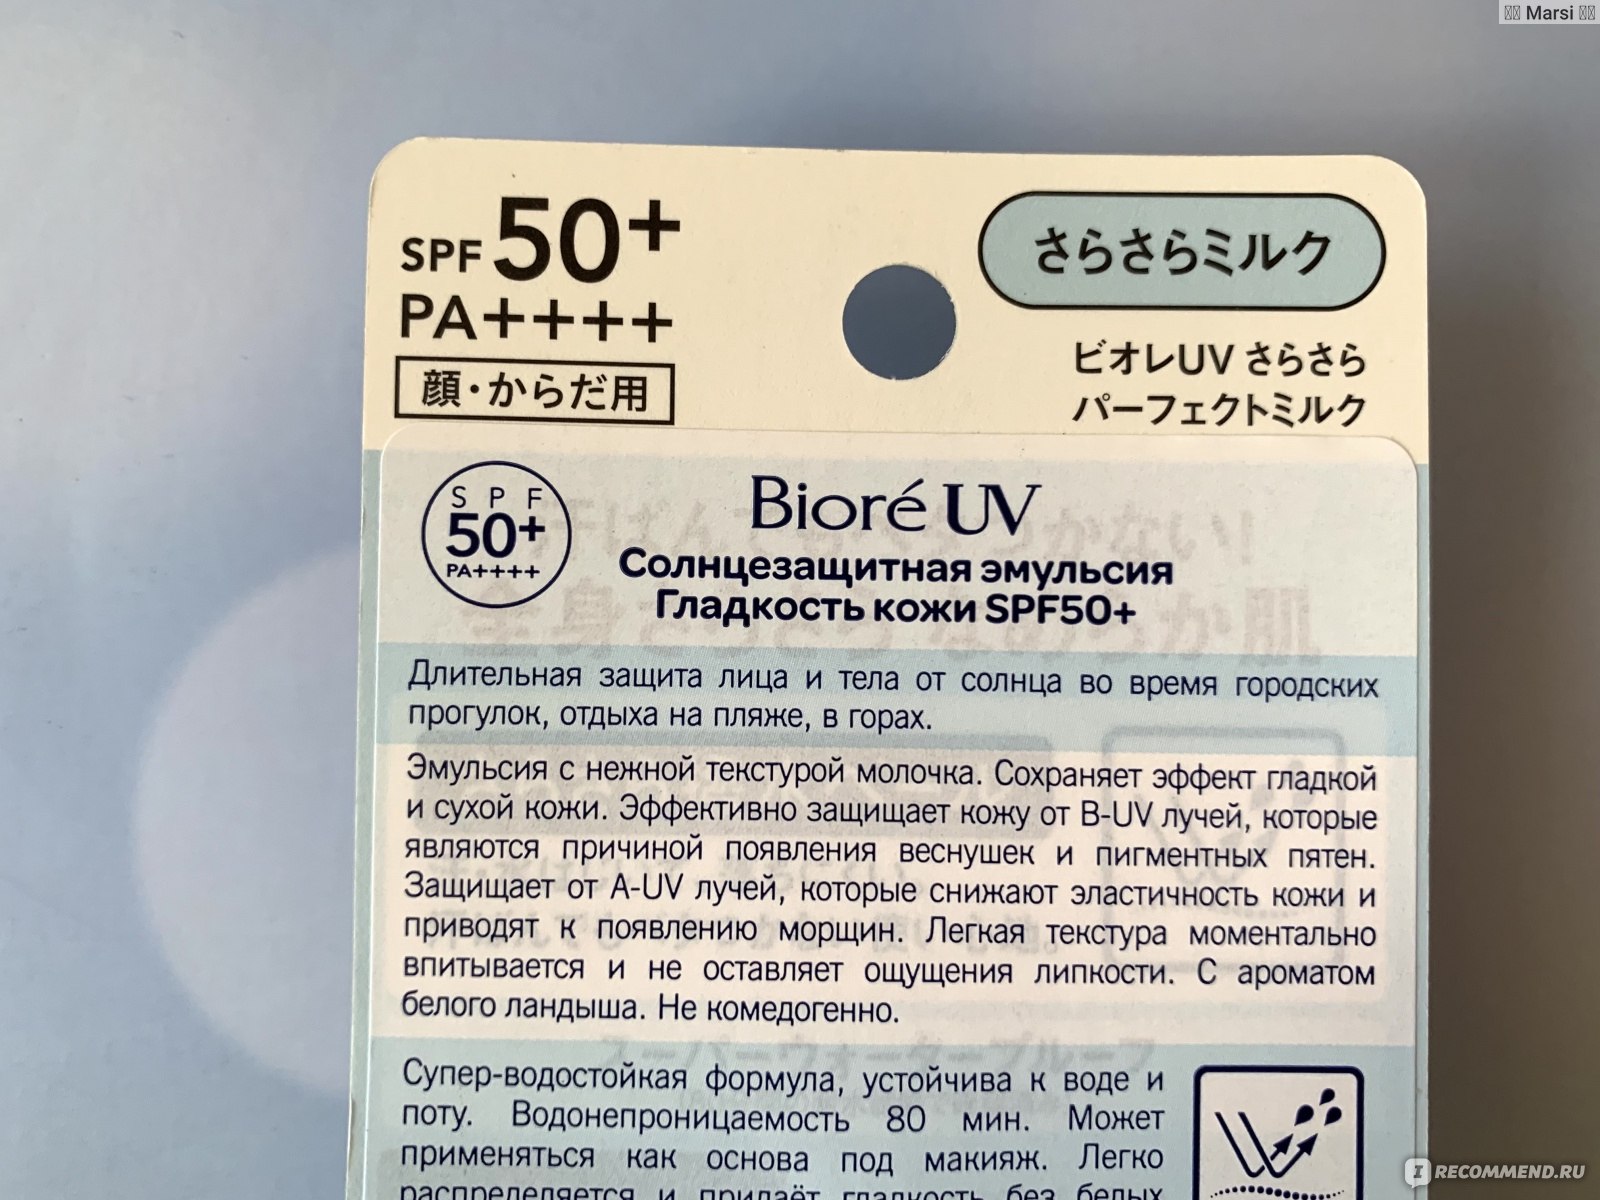 Солнцезащитное средство для лица Biore UV Perfect milk фото